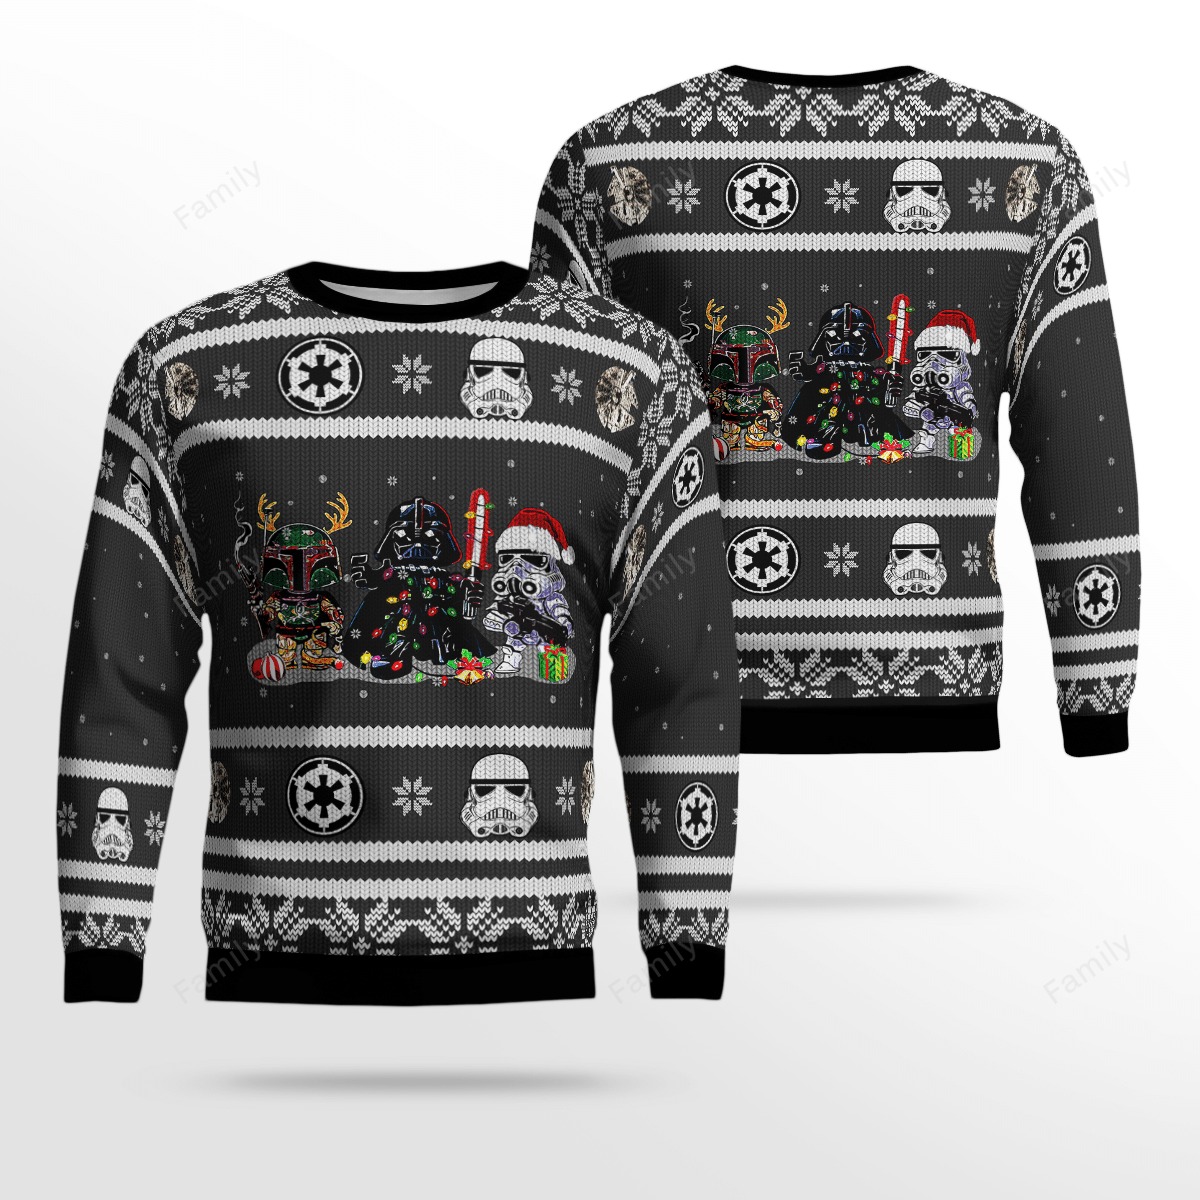 Star Wars Darth Vader Boba Fett christmas sweater – Saleoff 241121